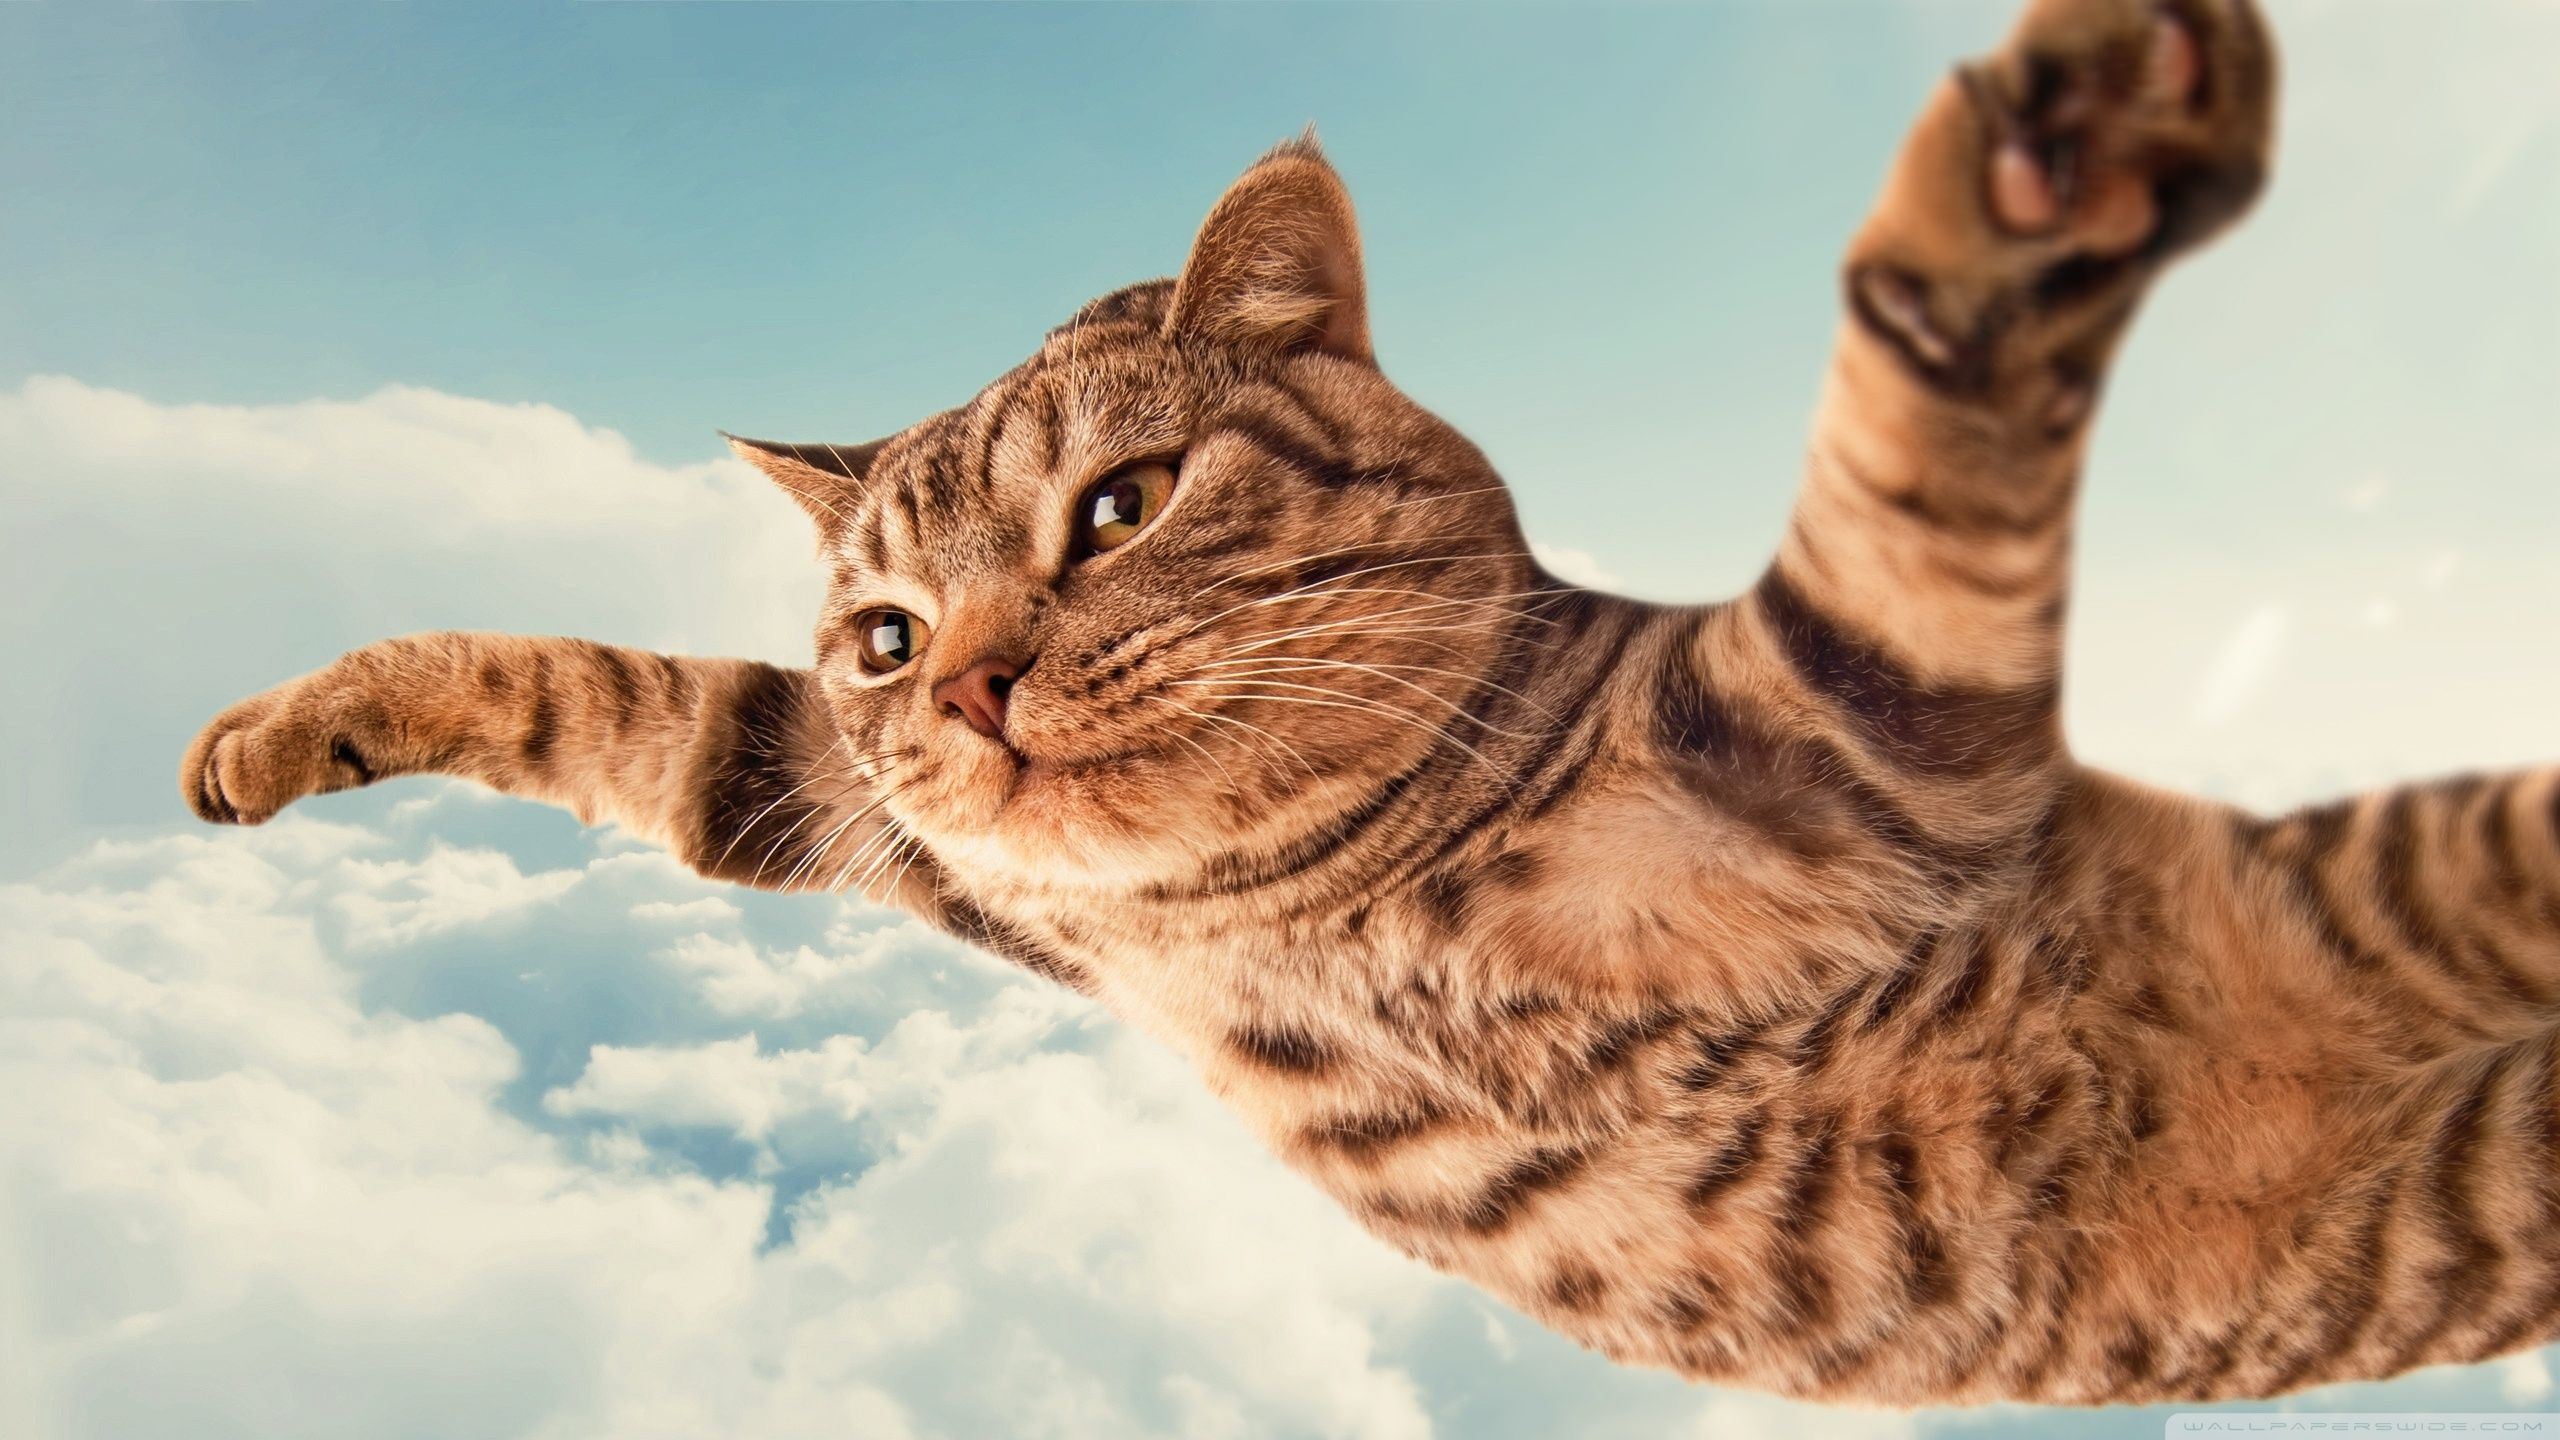 Crazy cat - Cats & Animals Background Wallpapers on Desktop Nexus (Image  2360208)